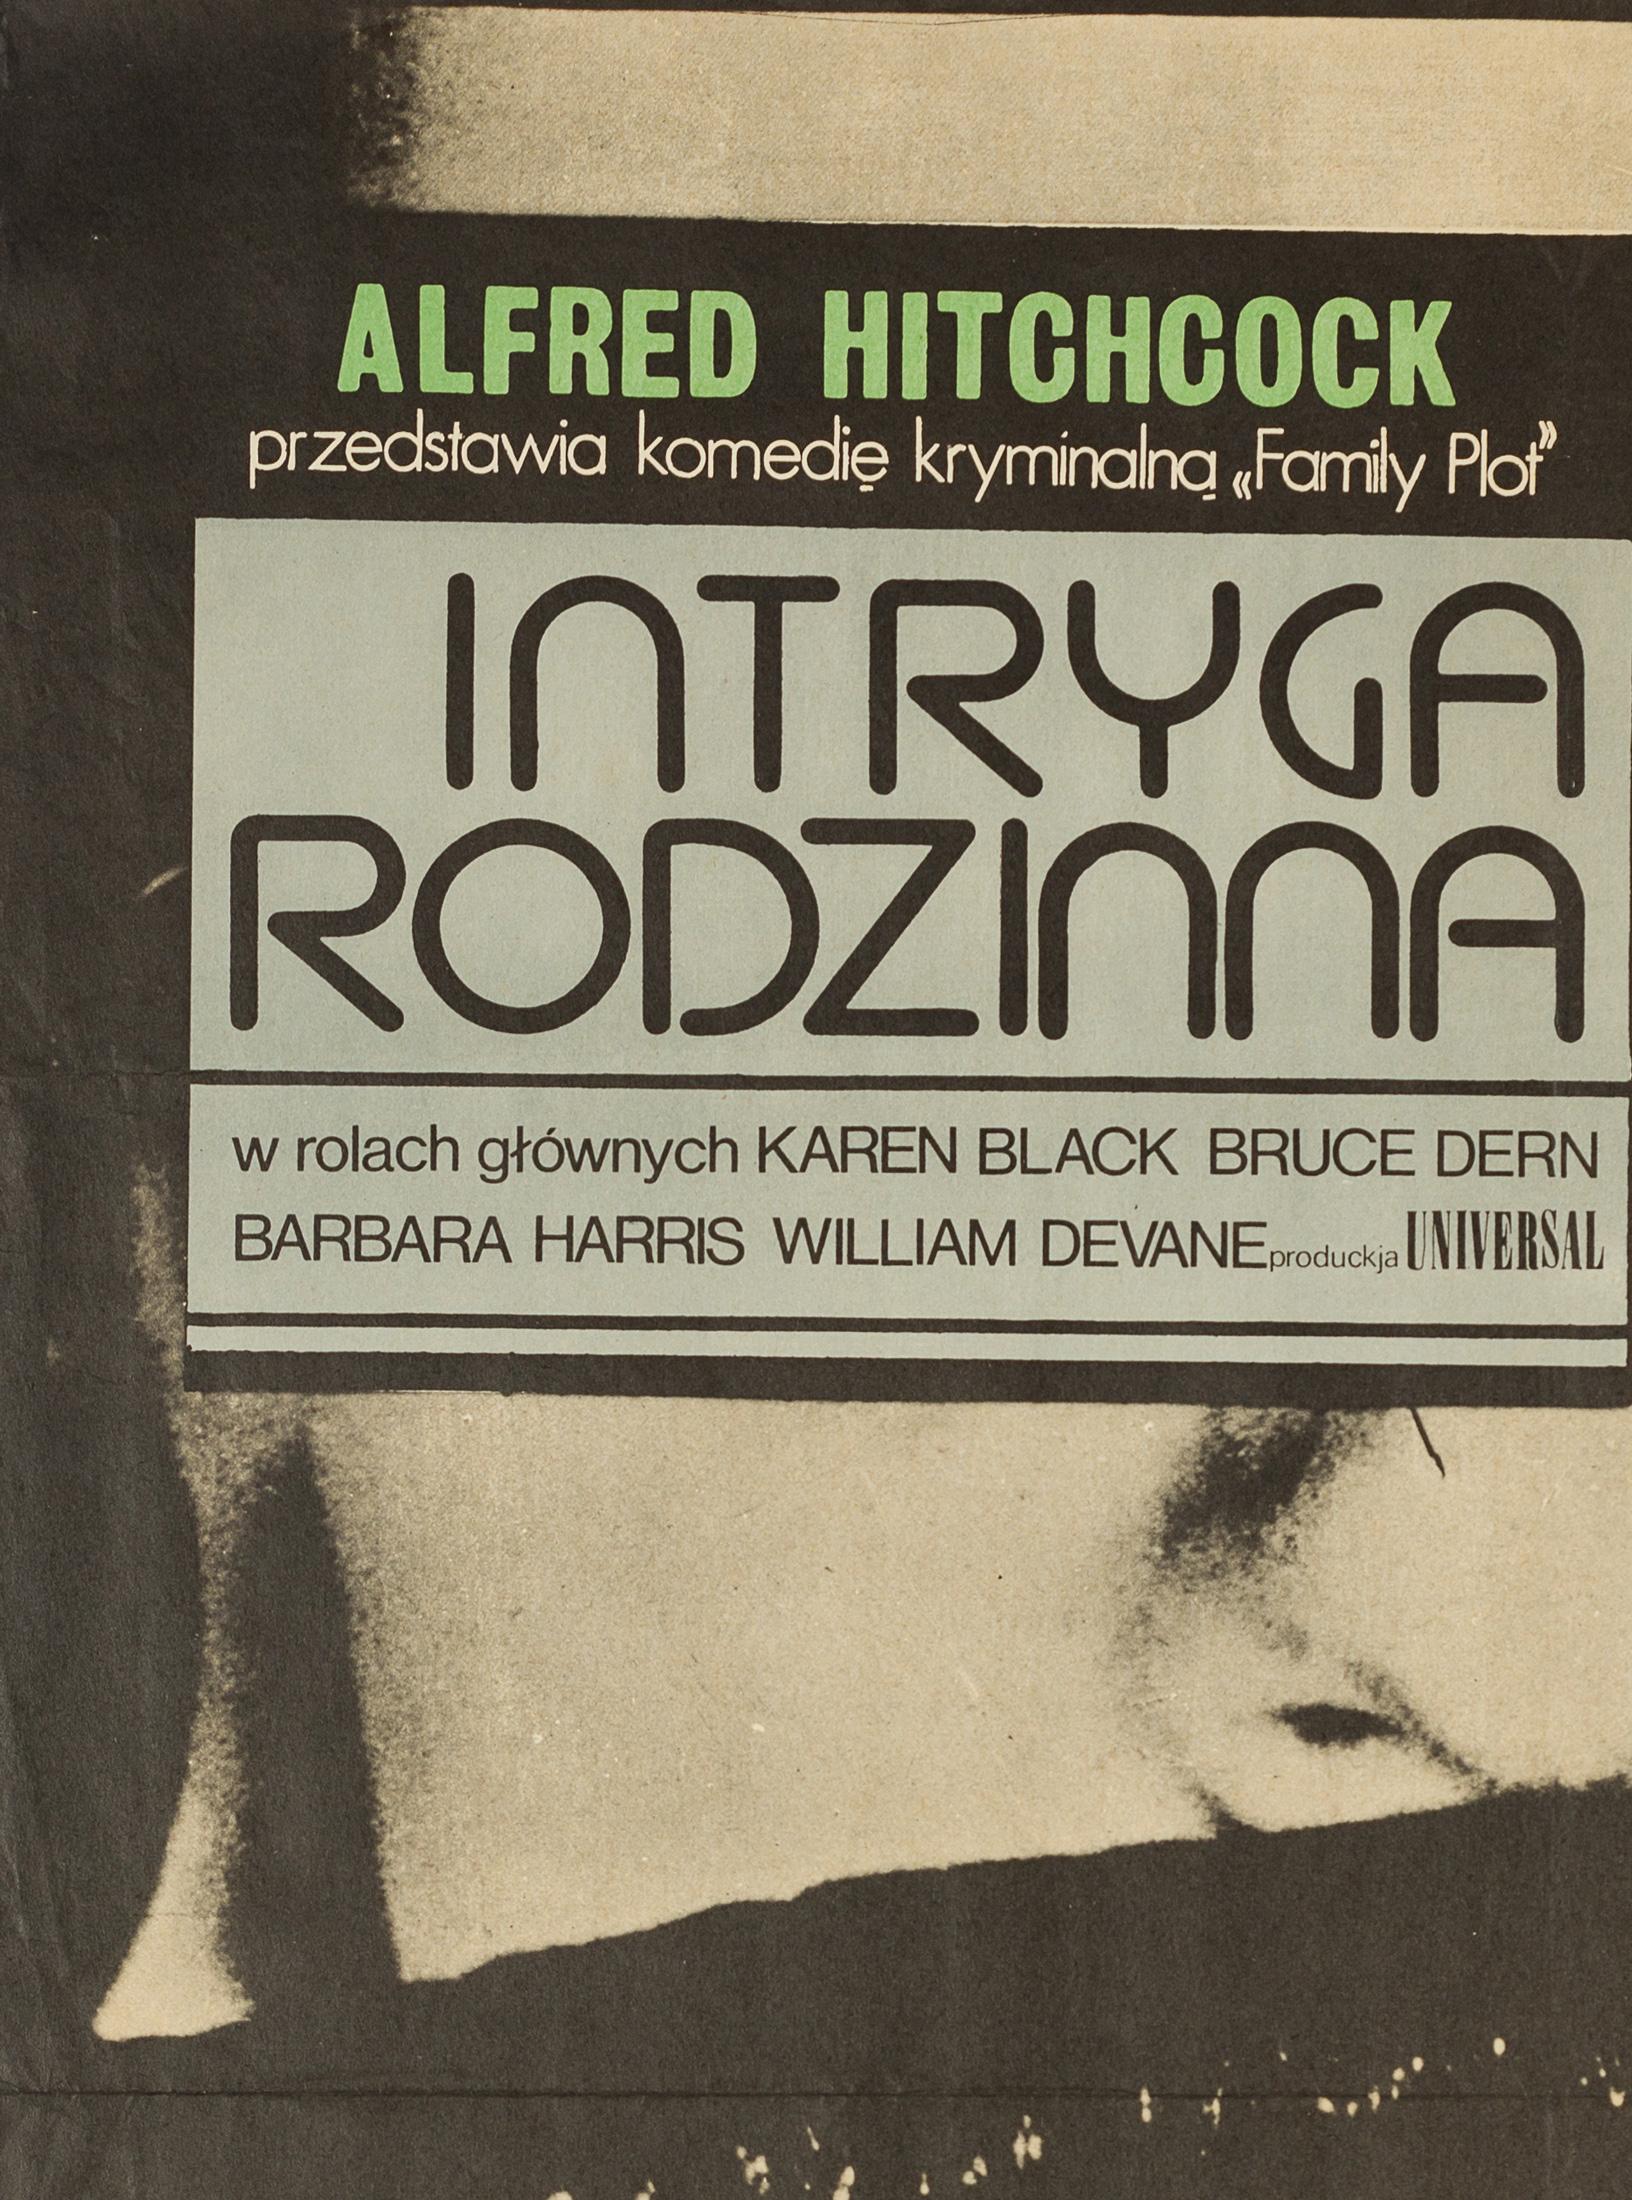 Une œuvre d'art originale très cool figure sur l'affiche polonaise de 1977 pour le dernier film d'Hitchcock, Family plot. La première année de sortie du film en Pologne.

A l'origine plié mais stocké à plat pendant longtemps et sera envoyé roulé.